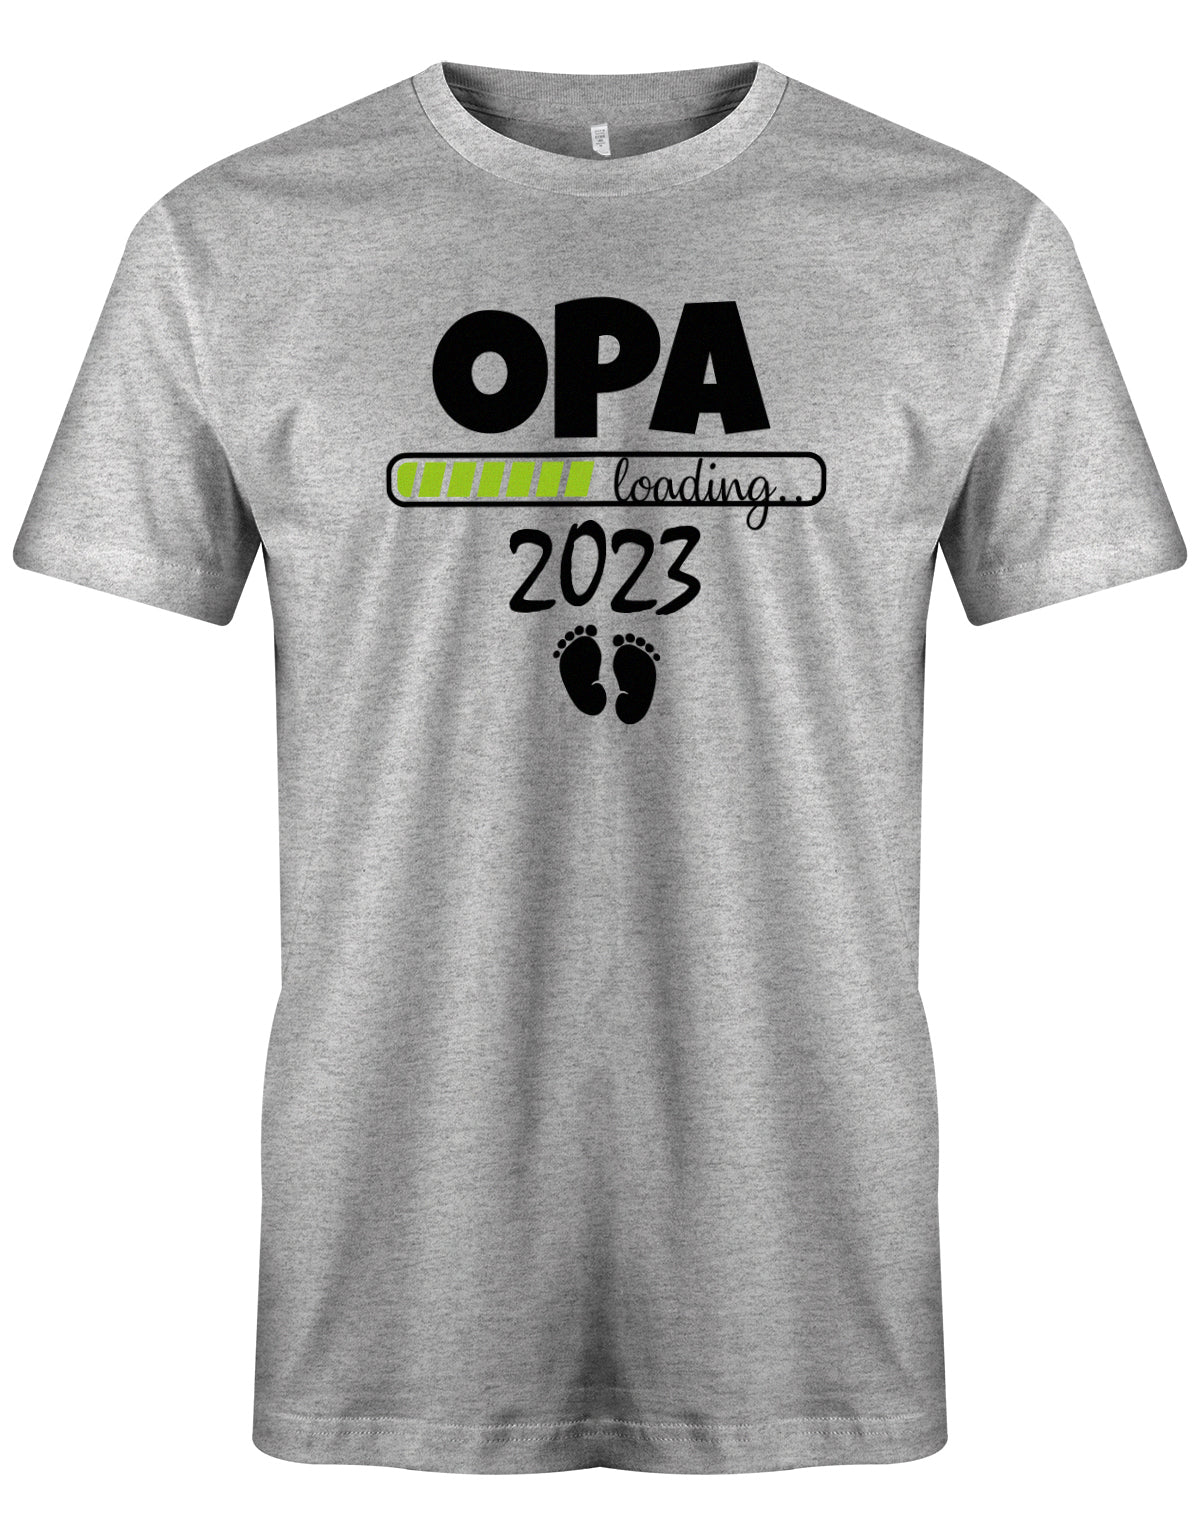 Opa T-Shirt Spruch für werdenden Opa - Opa Loading 2023 Balken lädt. Fußabdrücke Baby. Grau